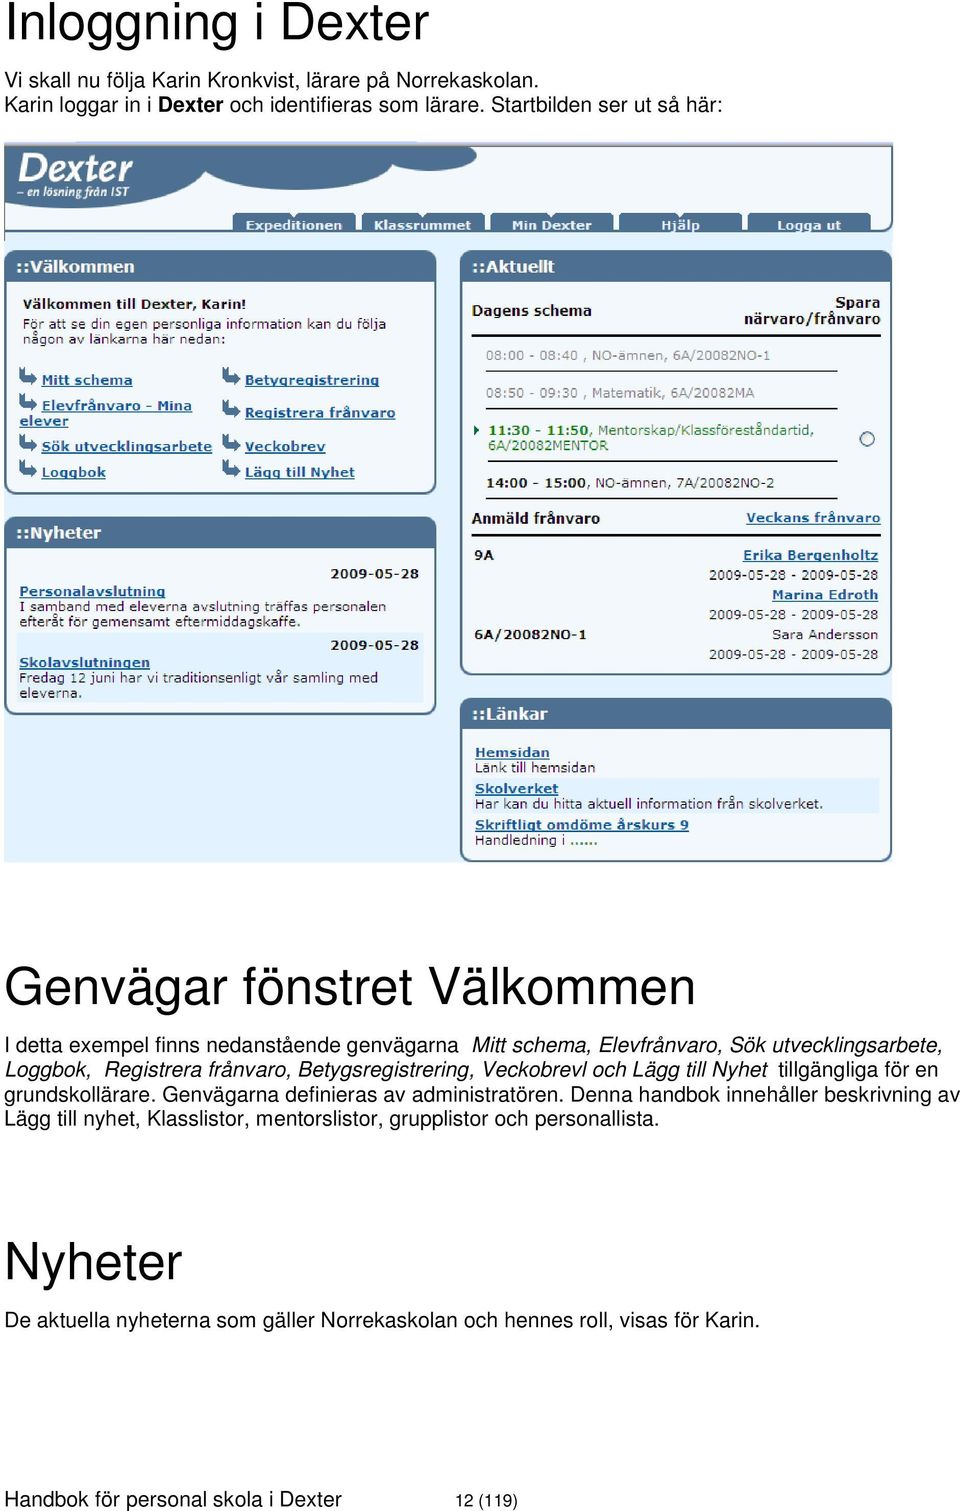 frånvaro, Betygsregistrering, Veckobrevl och Lägg till Nyhet tillgängliga för en grundskollärare. Genvägarna definieras av administratören.